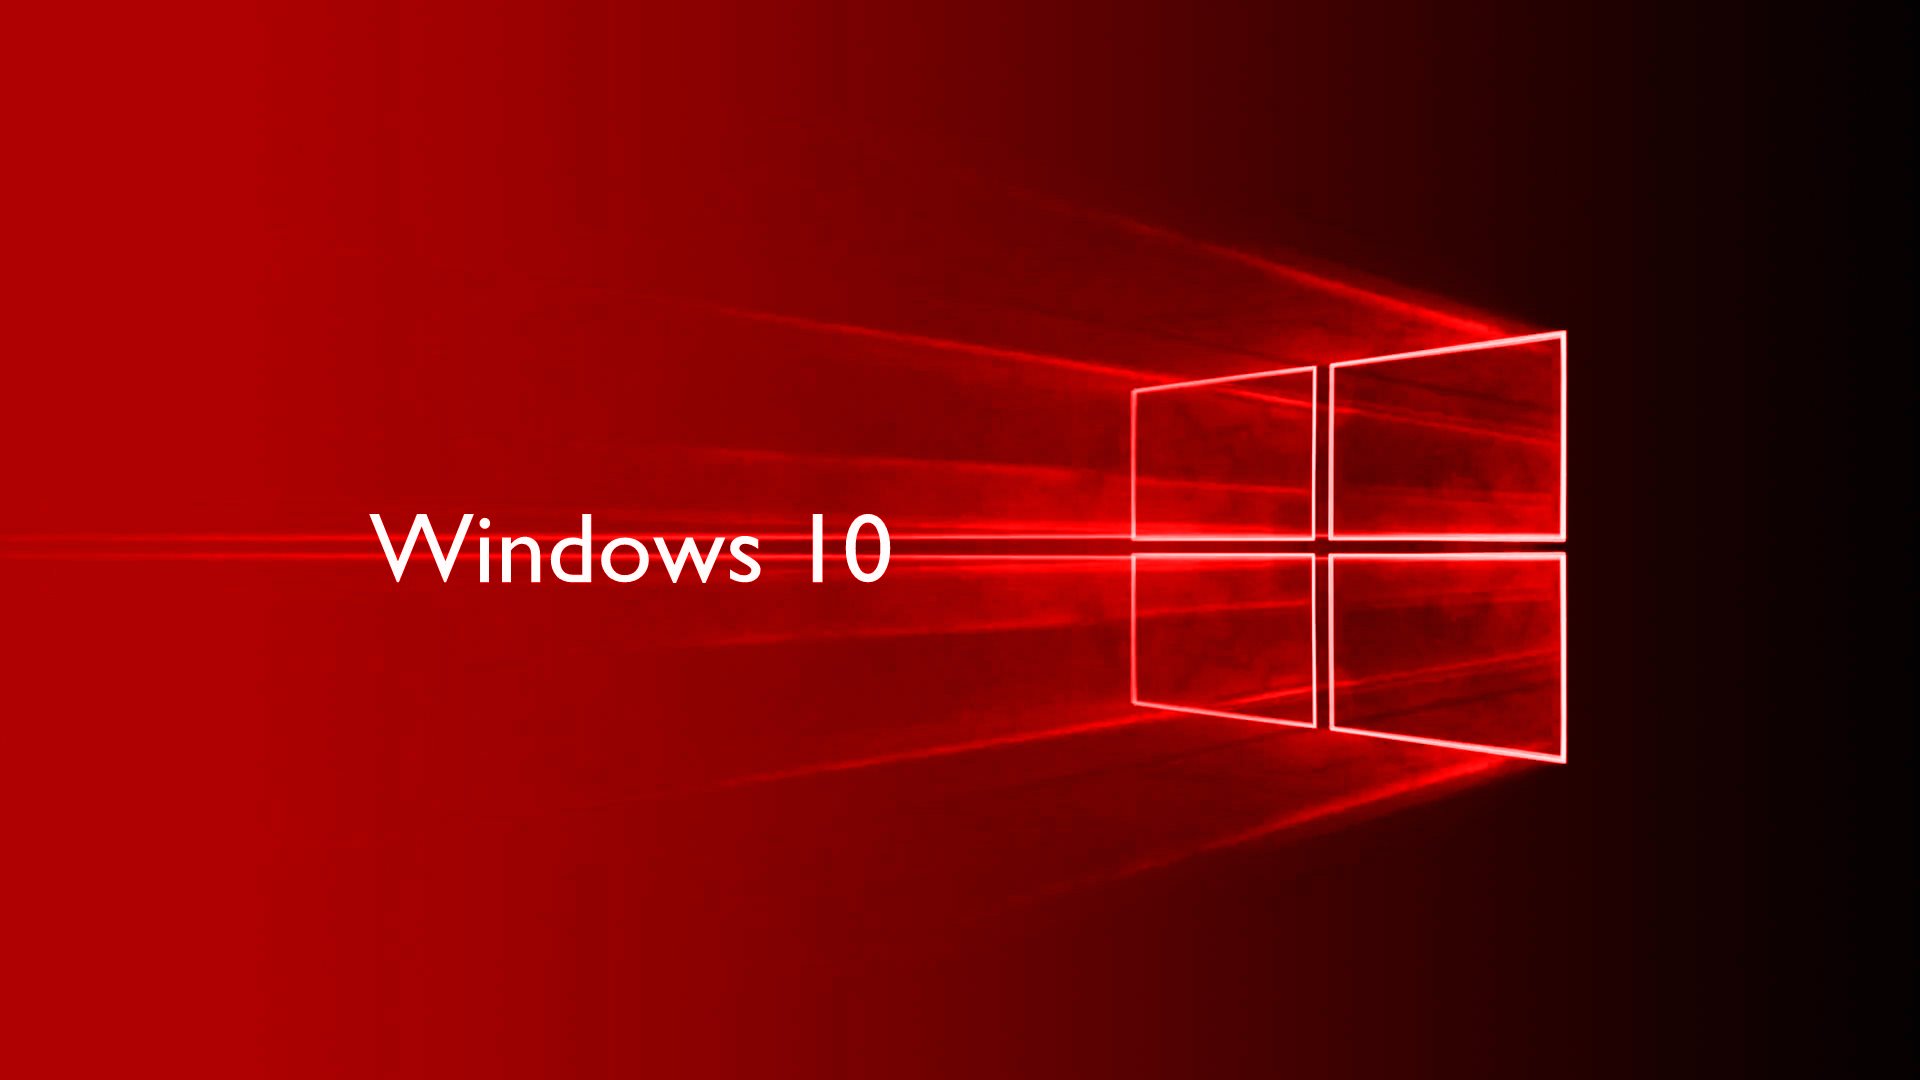 Доступ к «Skip ahead» на Windows 10 Insider Preview закрыт